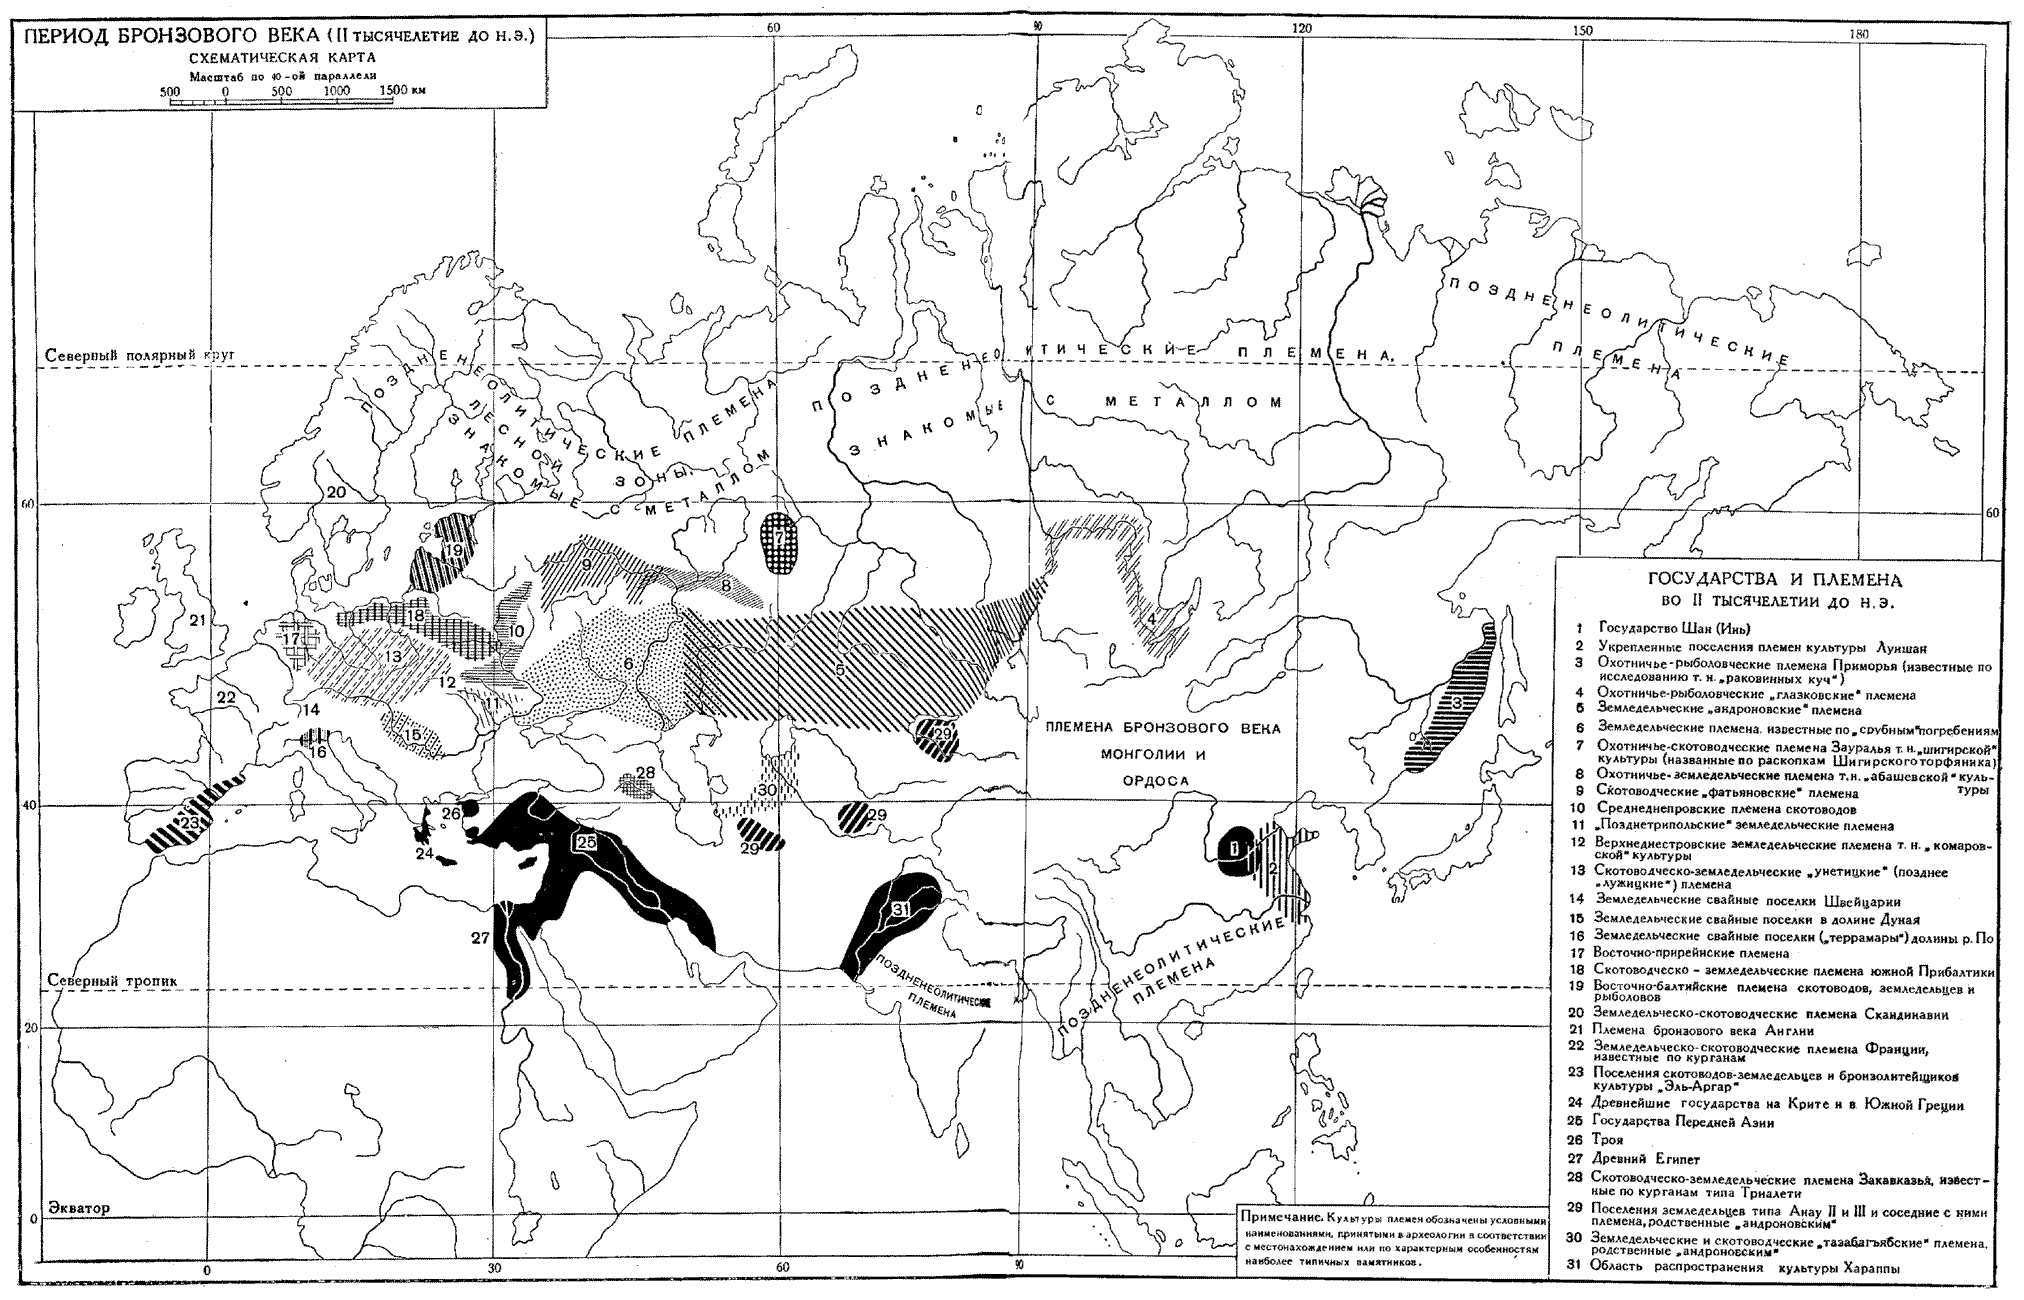 Карта. Период бронзового века (II тысячелетие до н. э.)